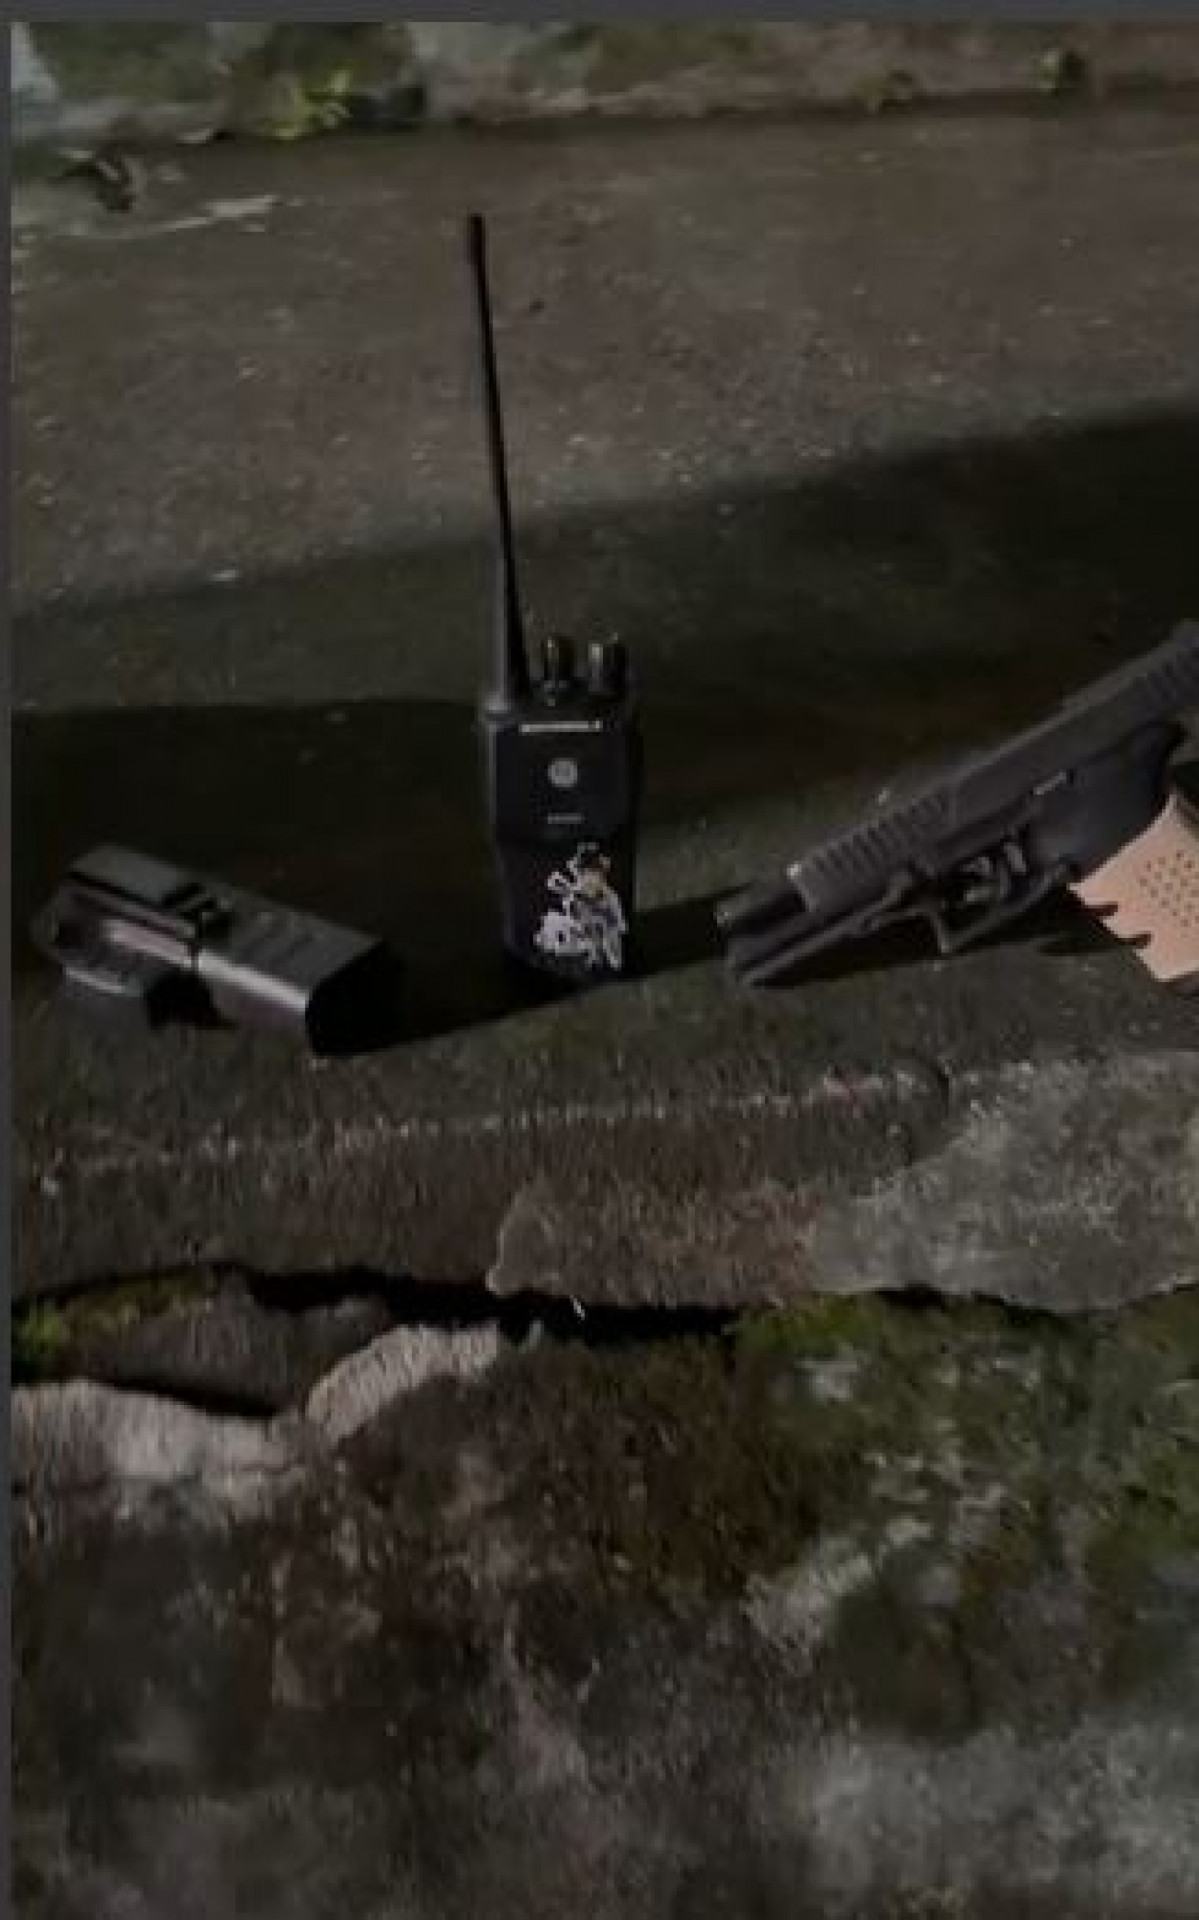 Uma arma e um rádio comunicador foi apreendido na ação - Reprodução